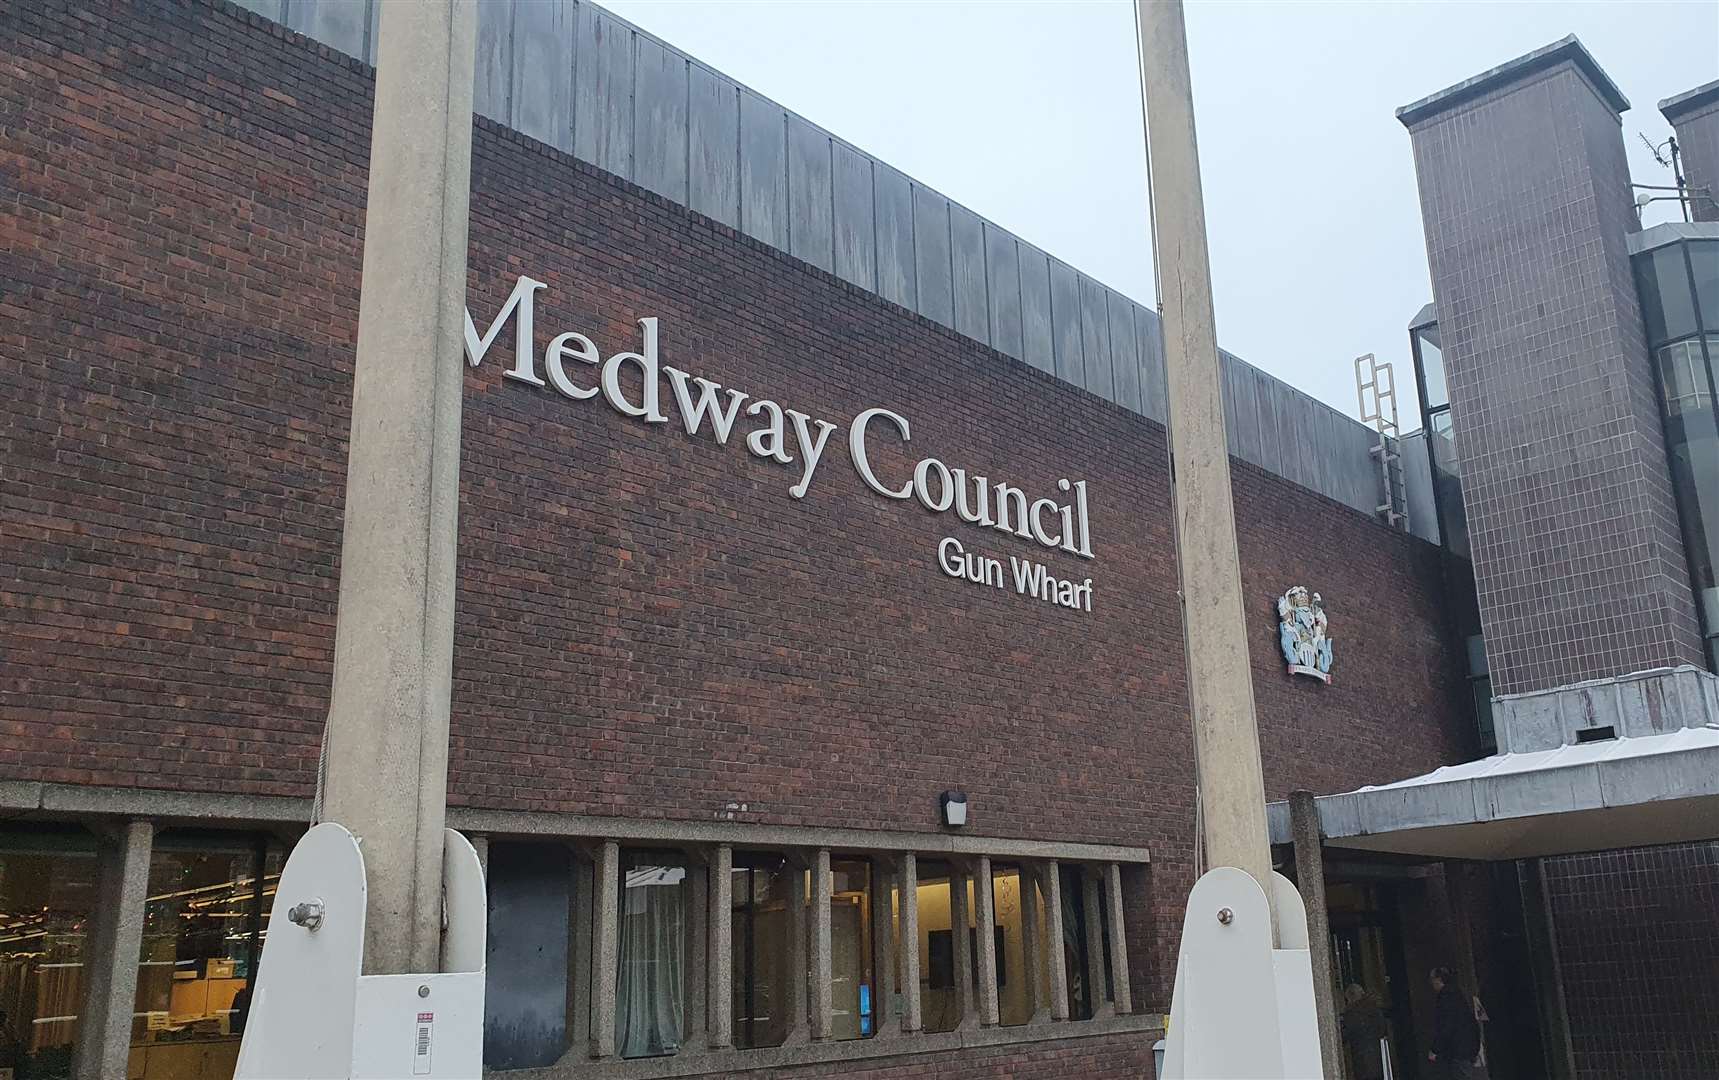 Medway Council headquarters, Gun Wharf